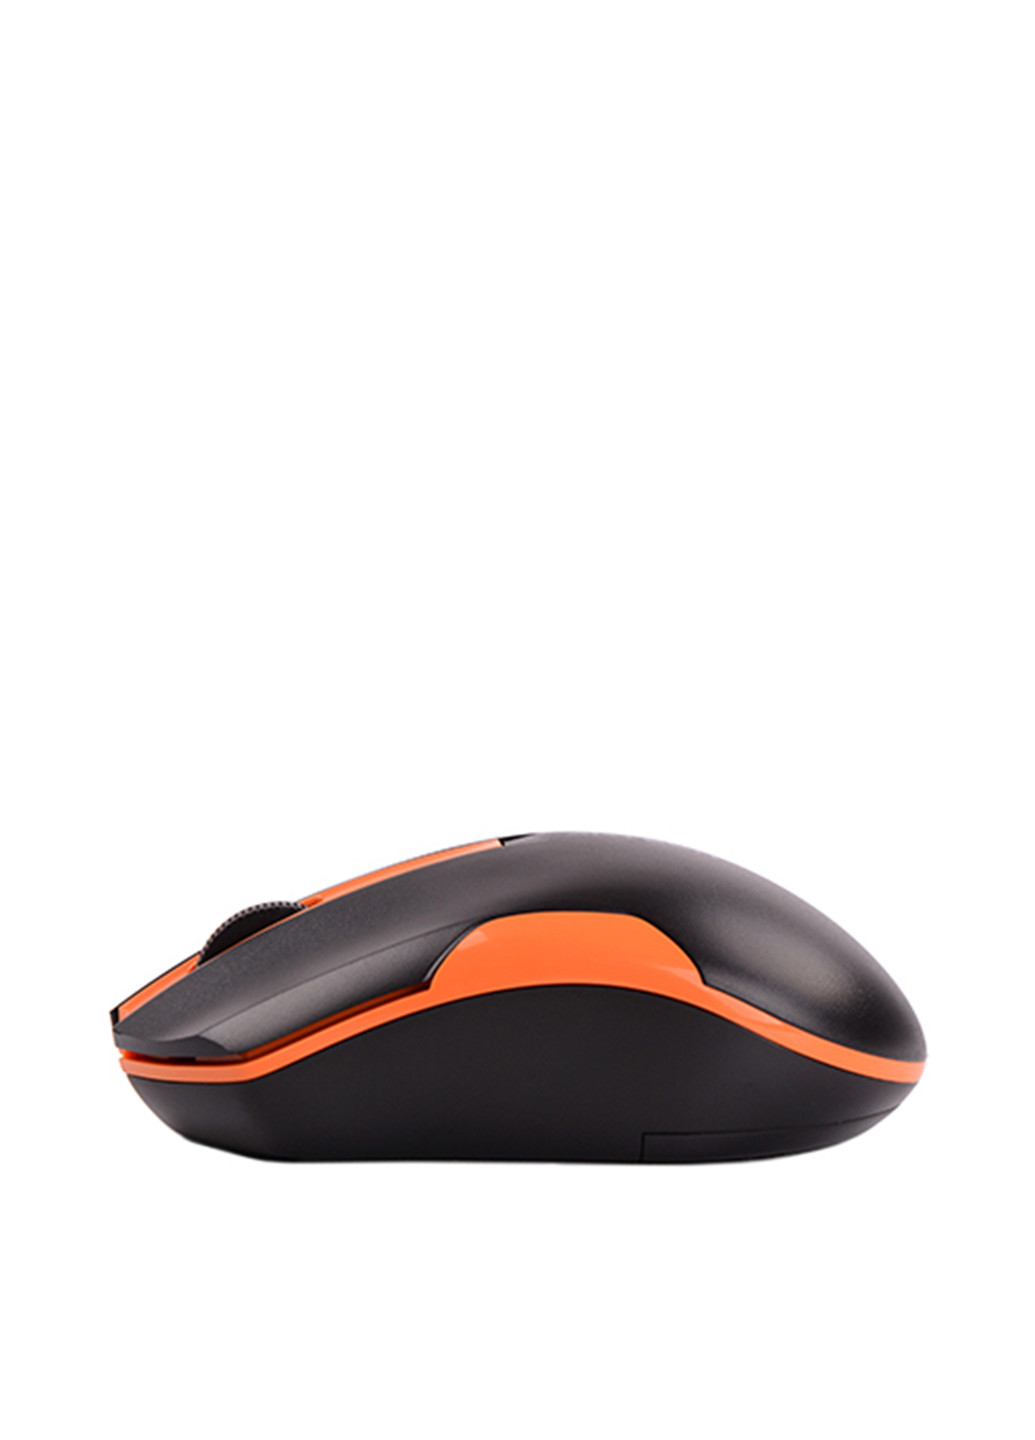 Мышь беспроводная A4Tech g3-200n (black+orange) (130006046)